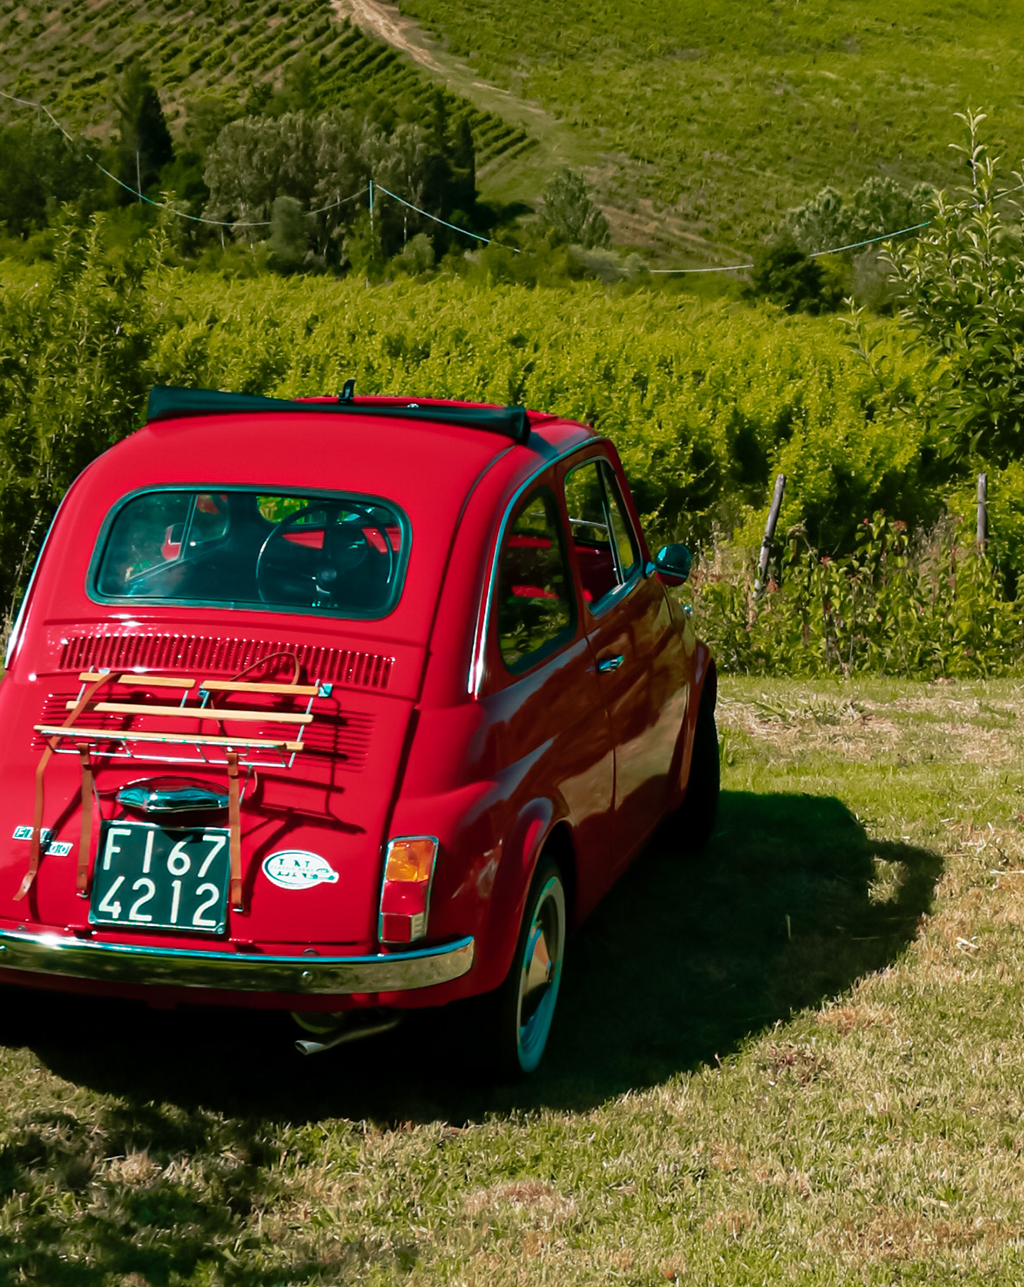 Noleggio Fiat 500 d'epoca per esplorare campagna Toscana e vigneti suggestivi di San Miniato